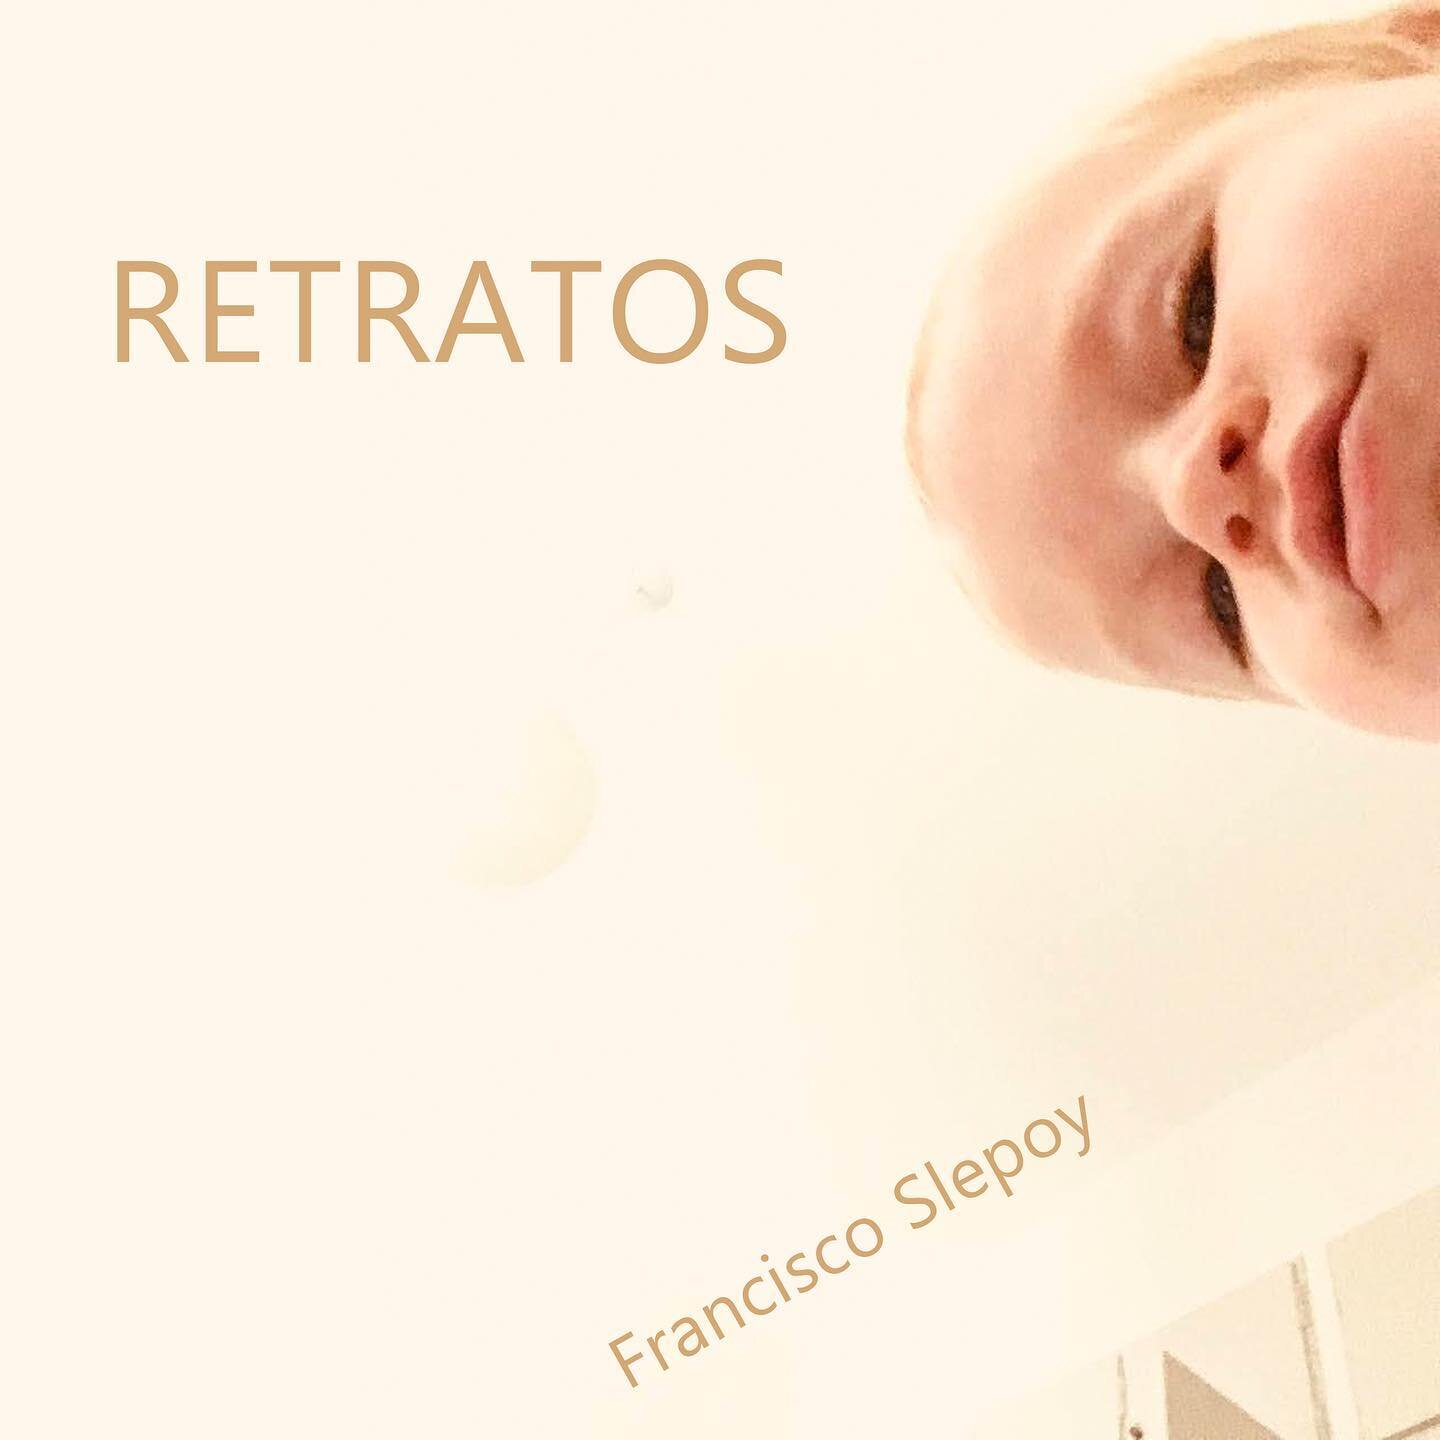 💿 Retratos 💿 

📀 Ya se encuentra disponible para descargar en @bandcamp &ldquo;Retratos&rdquo;, lo &uacute;ltimo de @franciscoslepoy .

📸 &ldquo;Retratos&rdquo; es el s&eacute;ptimo &aacute;lbum de Francisco Slepoy como l&iacute;der. Slepoy es un